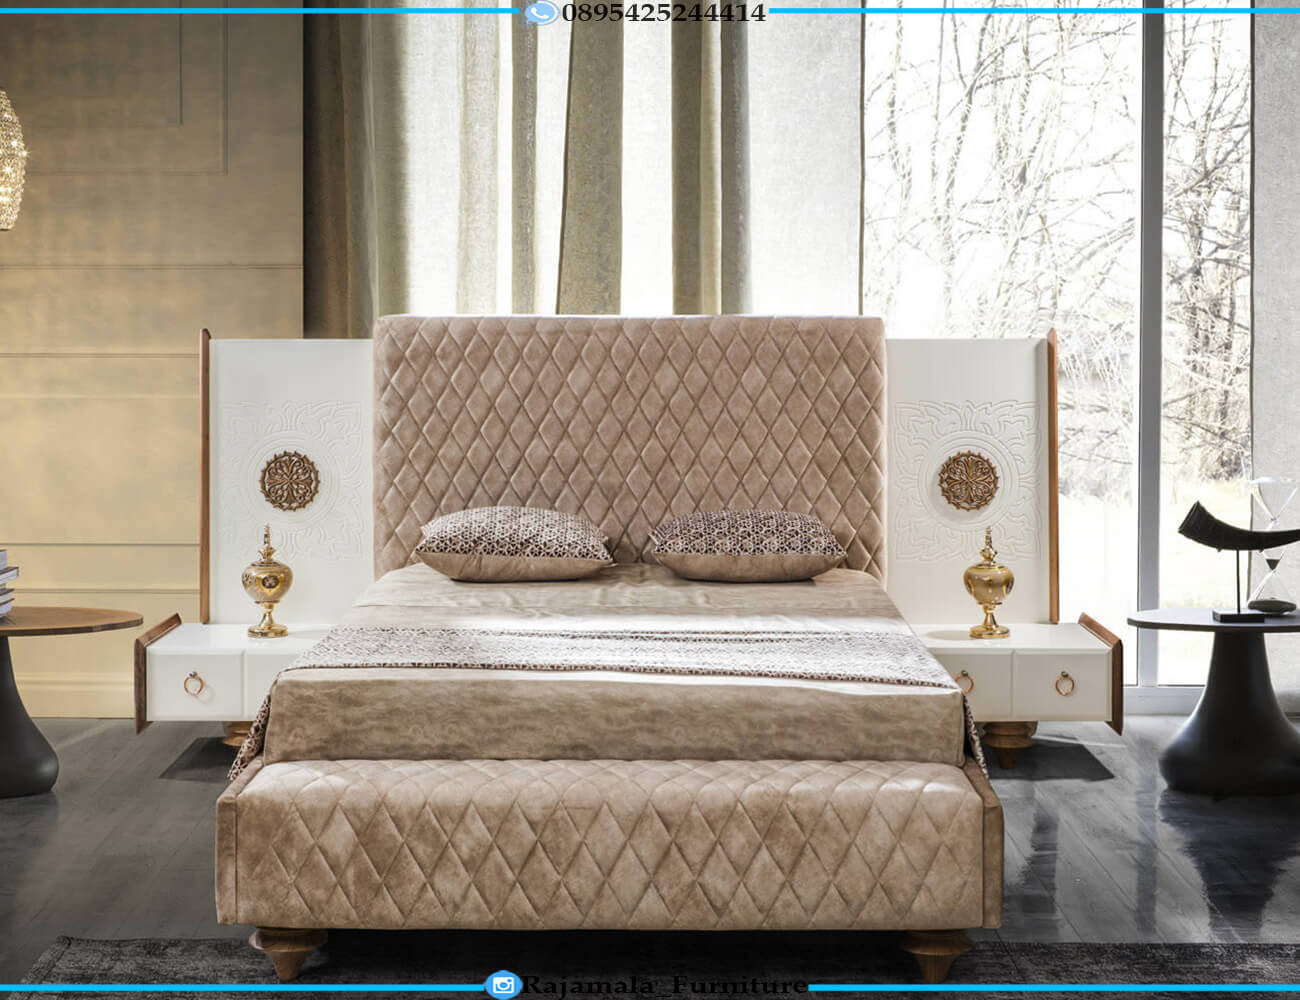 Tempat Tidur Minimalis Terbaru Furniture Jepara RM-1005.2